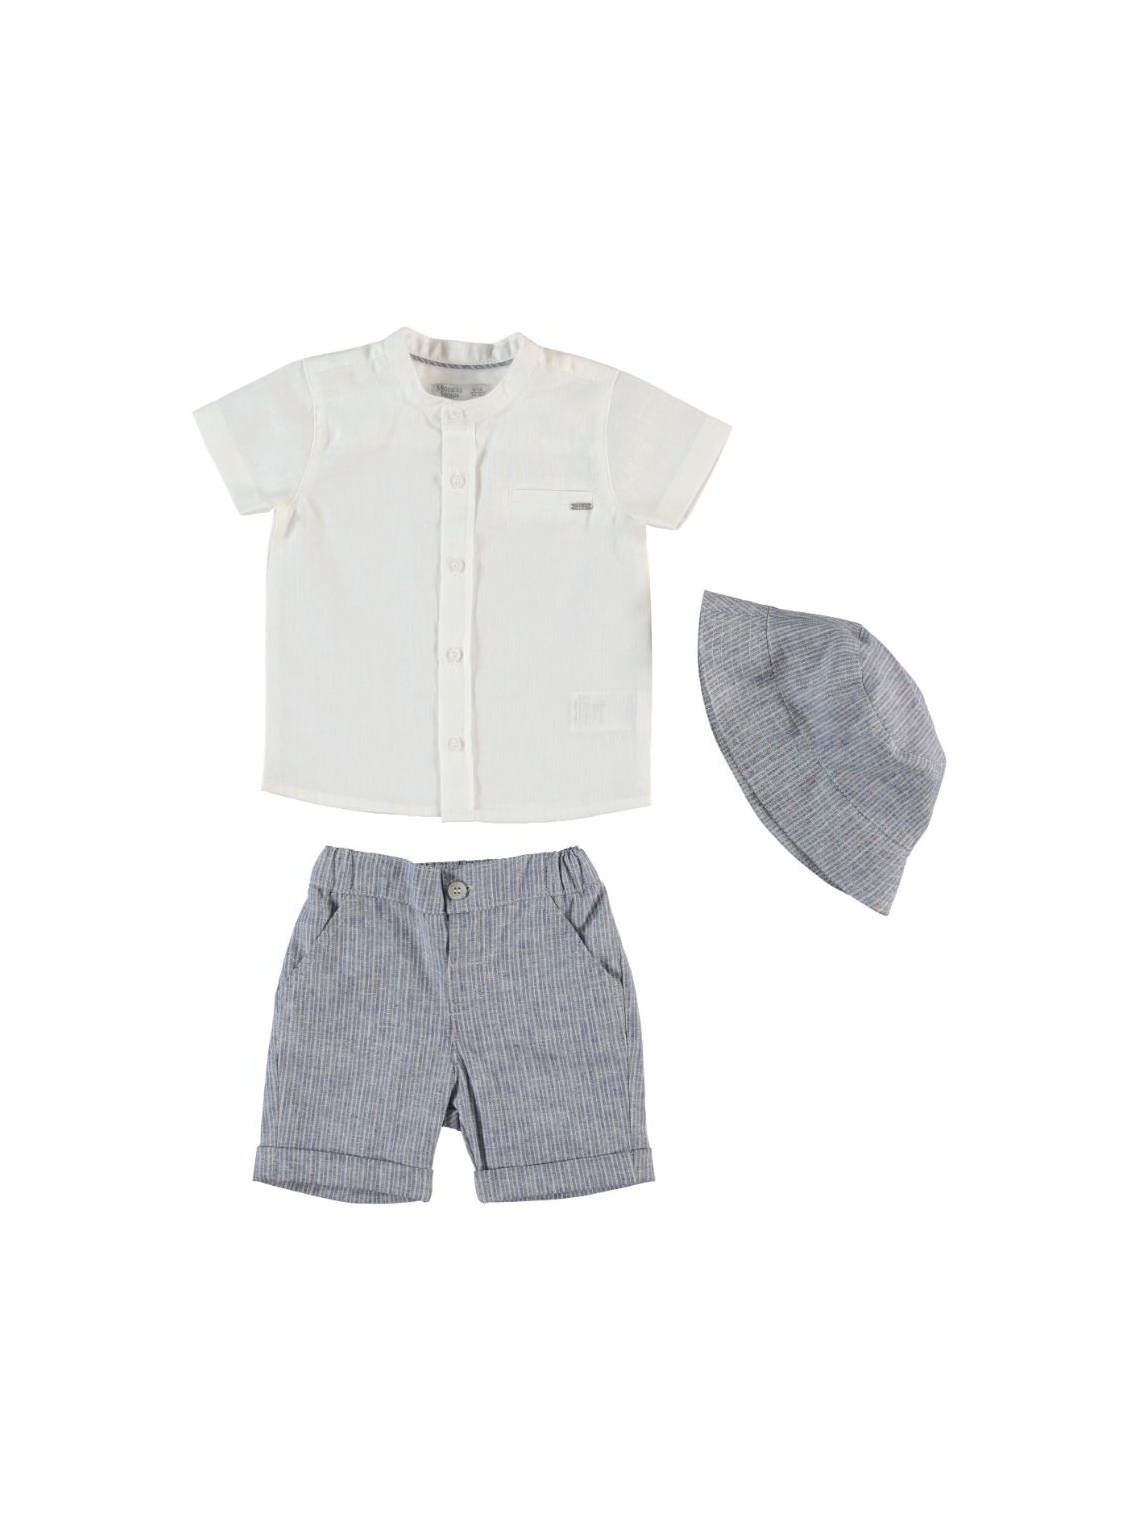 Exclusive Brand - Baby Boy 3 Pieces Set ( Shorts + Shirt + Cap ) / 2-3Y | 3-4Y | 4-5Y | 5-6Y - Kids Fashion Turkey